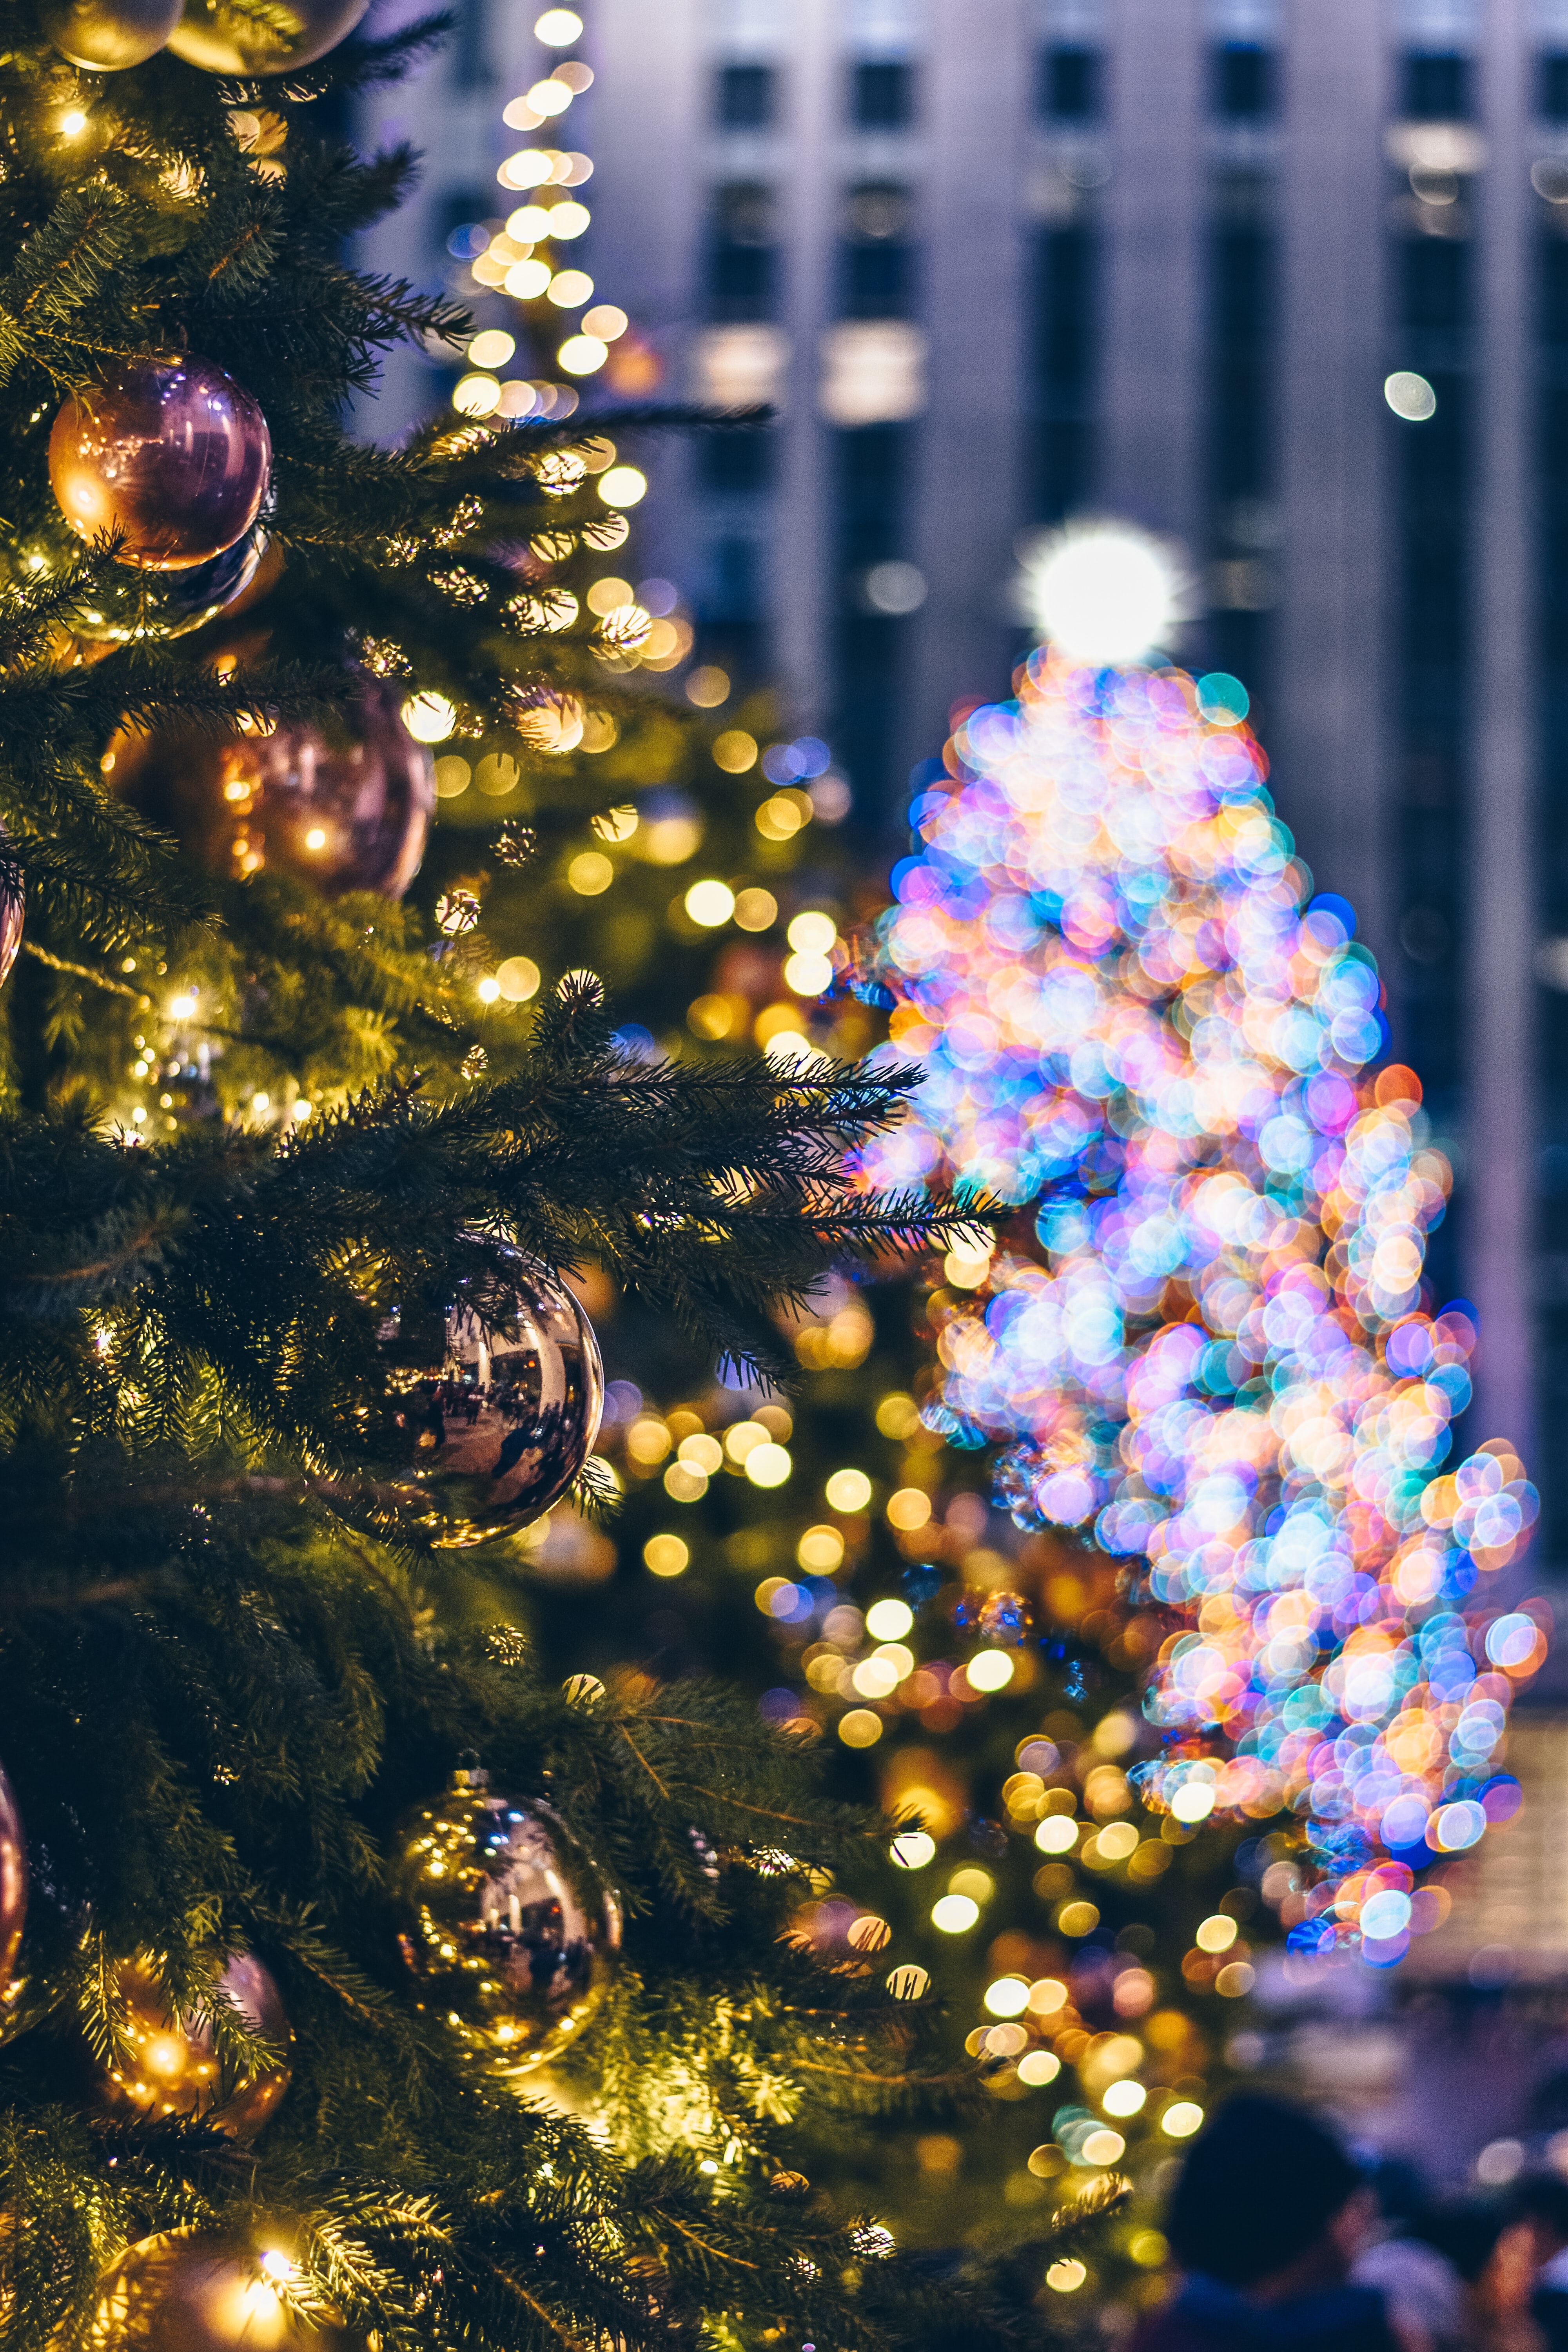 Cây thông Noel là biểu tượng không thể thiếu trong mỗi kỳ nghỉ Giáng sinh. Hãy nhìn vào hình ảnh này và cảm nhận sự trang trọng và đẹp mắt của cây thông Noel trong ngày lễ.